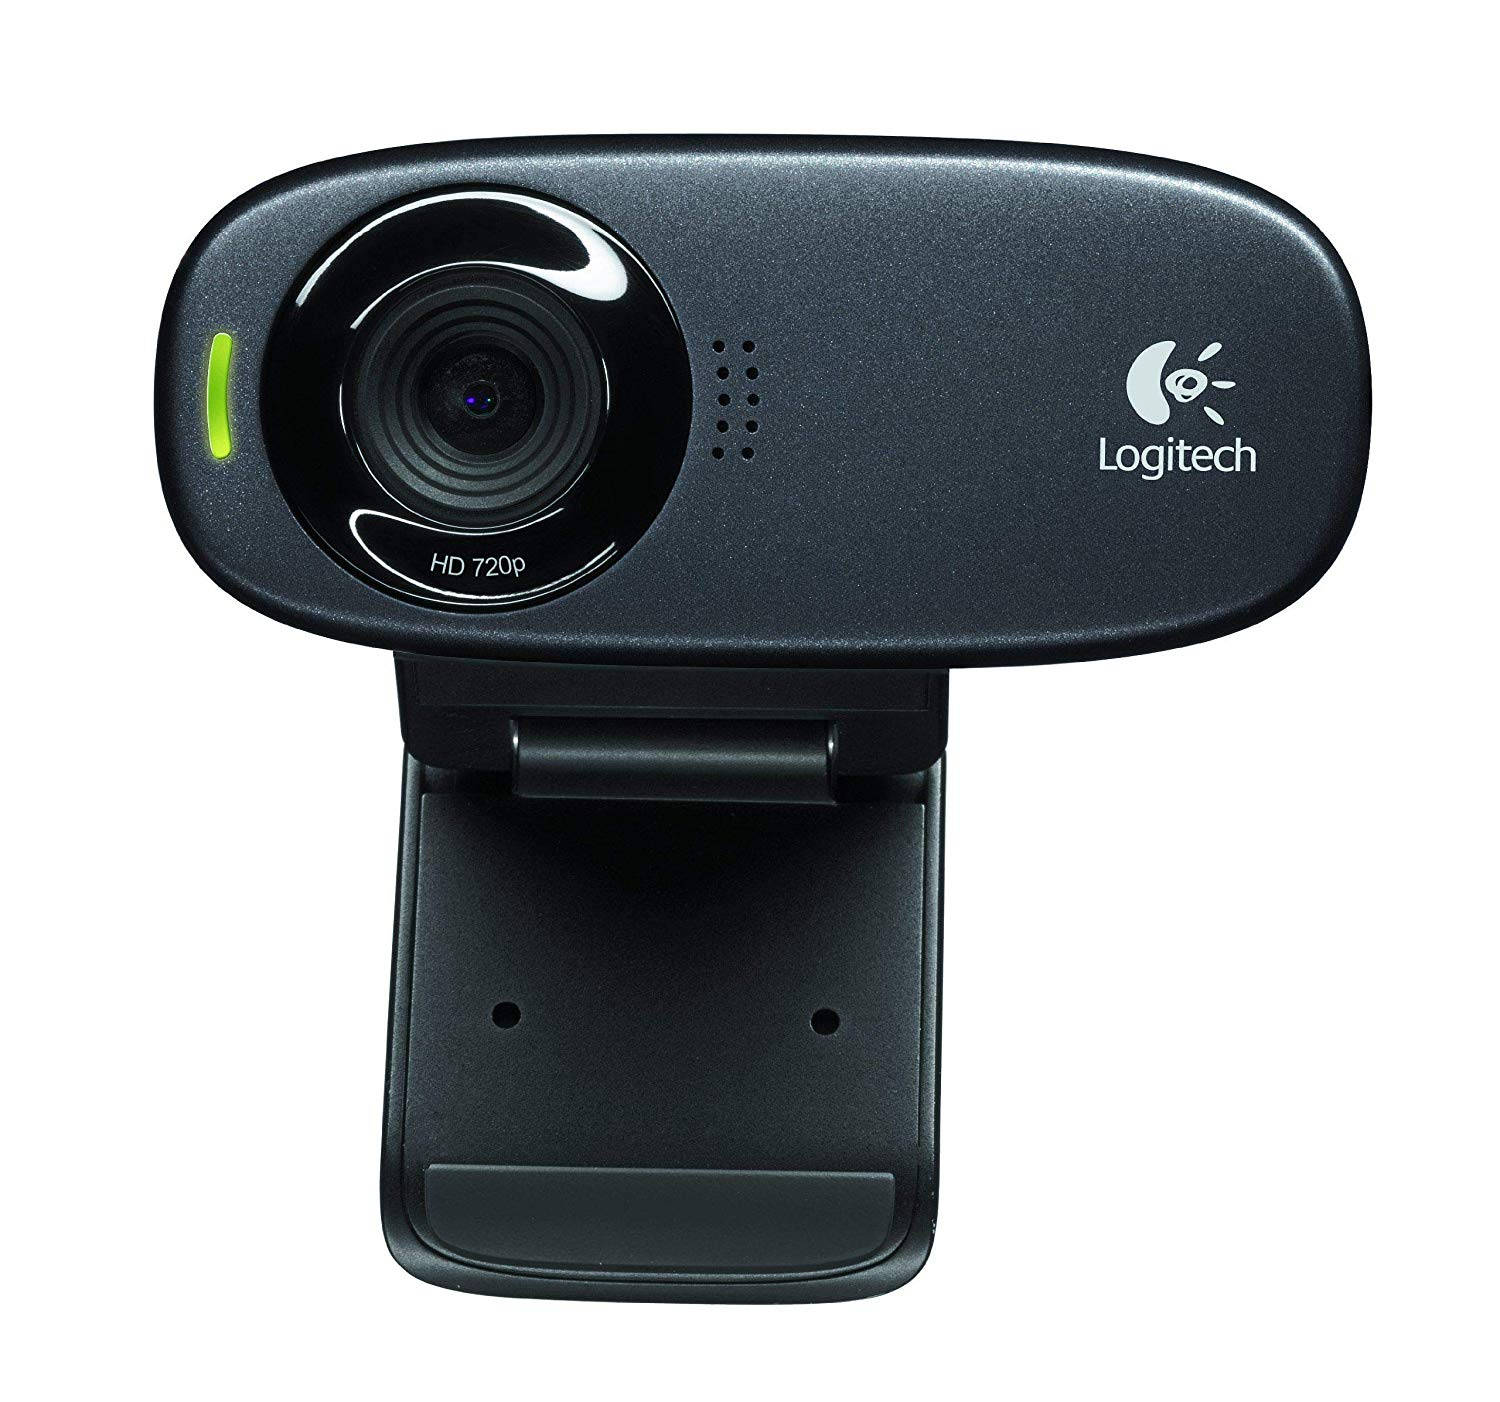 External Logitech Webcam Wallpaper